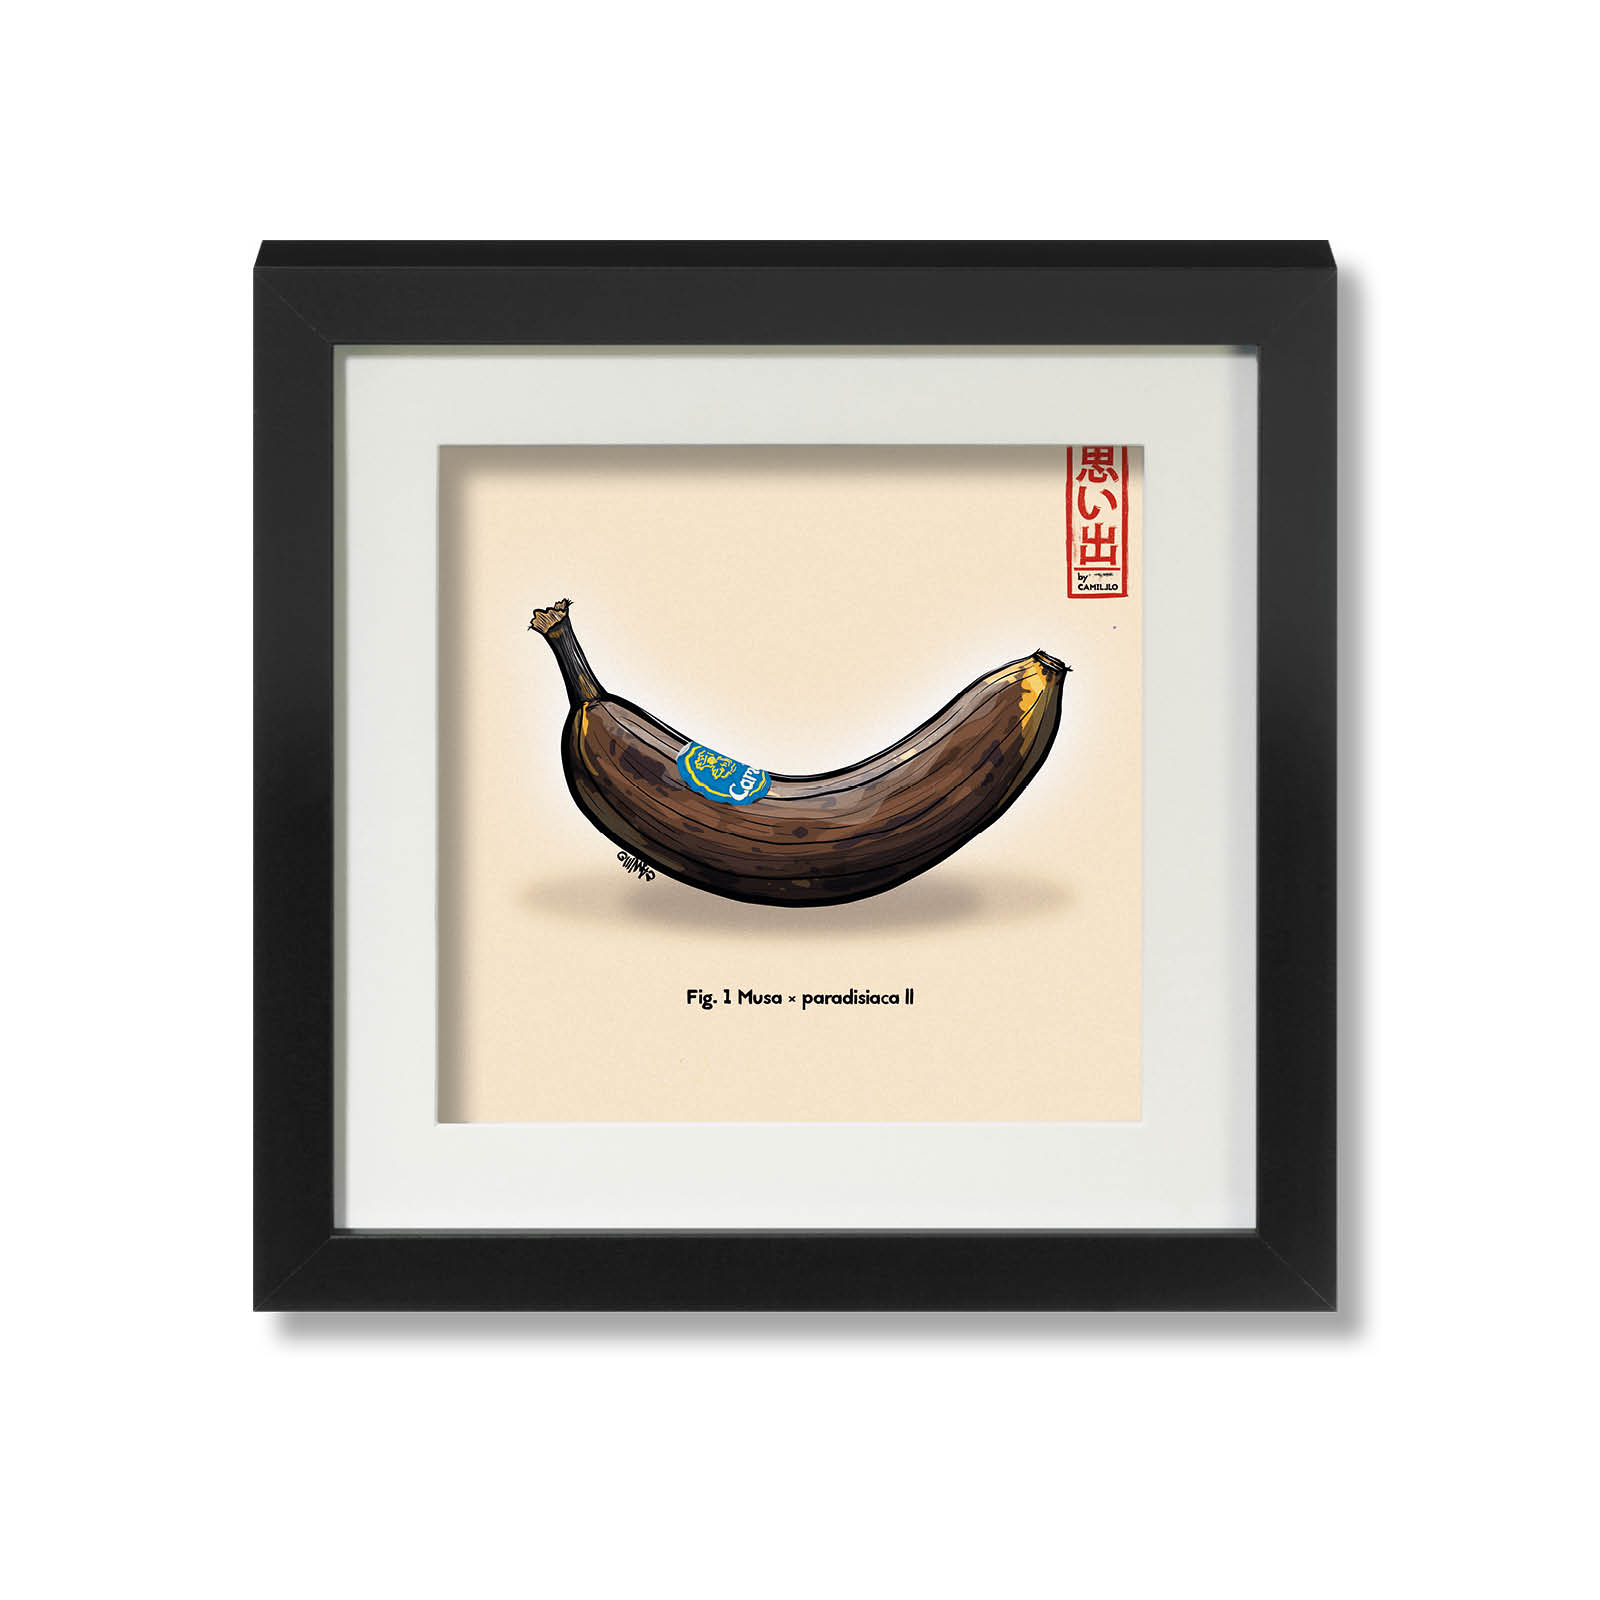 Giclée-Druck einer reifen Banane - Rockstar unter den Früchten - schwarzer Rahmen - große Größe